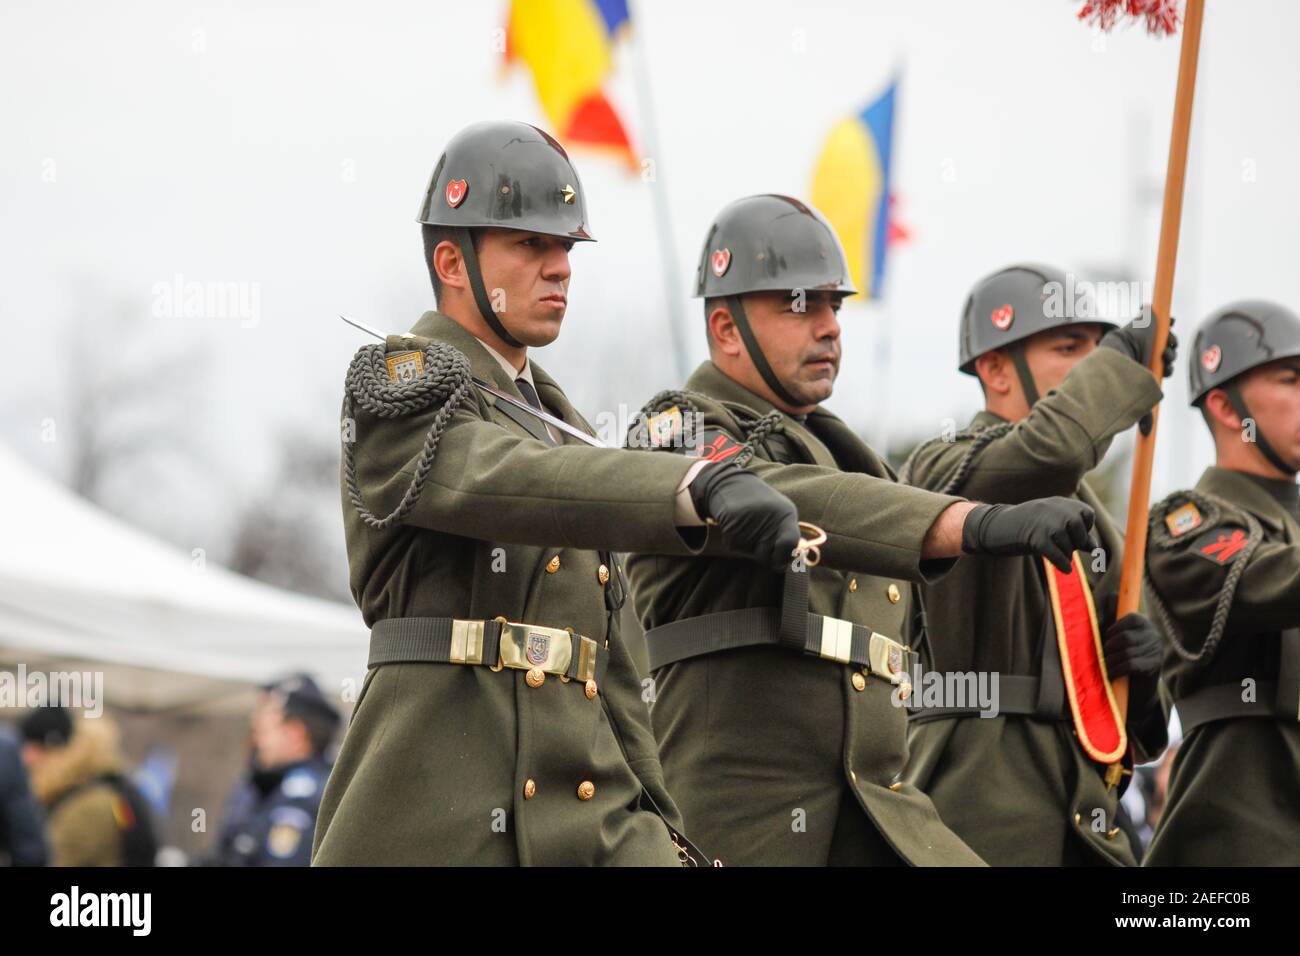 Bukarest, Rumänien - Dezember 01, 2019: türkische Soldaten in Dress Uniform  nehmen Sie teil an der rumänischen nationalen Tag militärische Parade  Stockfotografie - Alamy